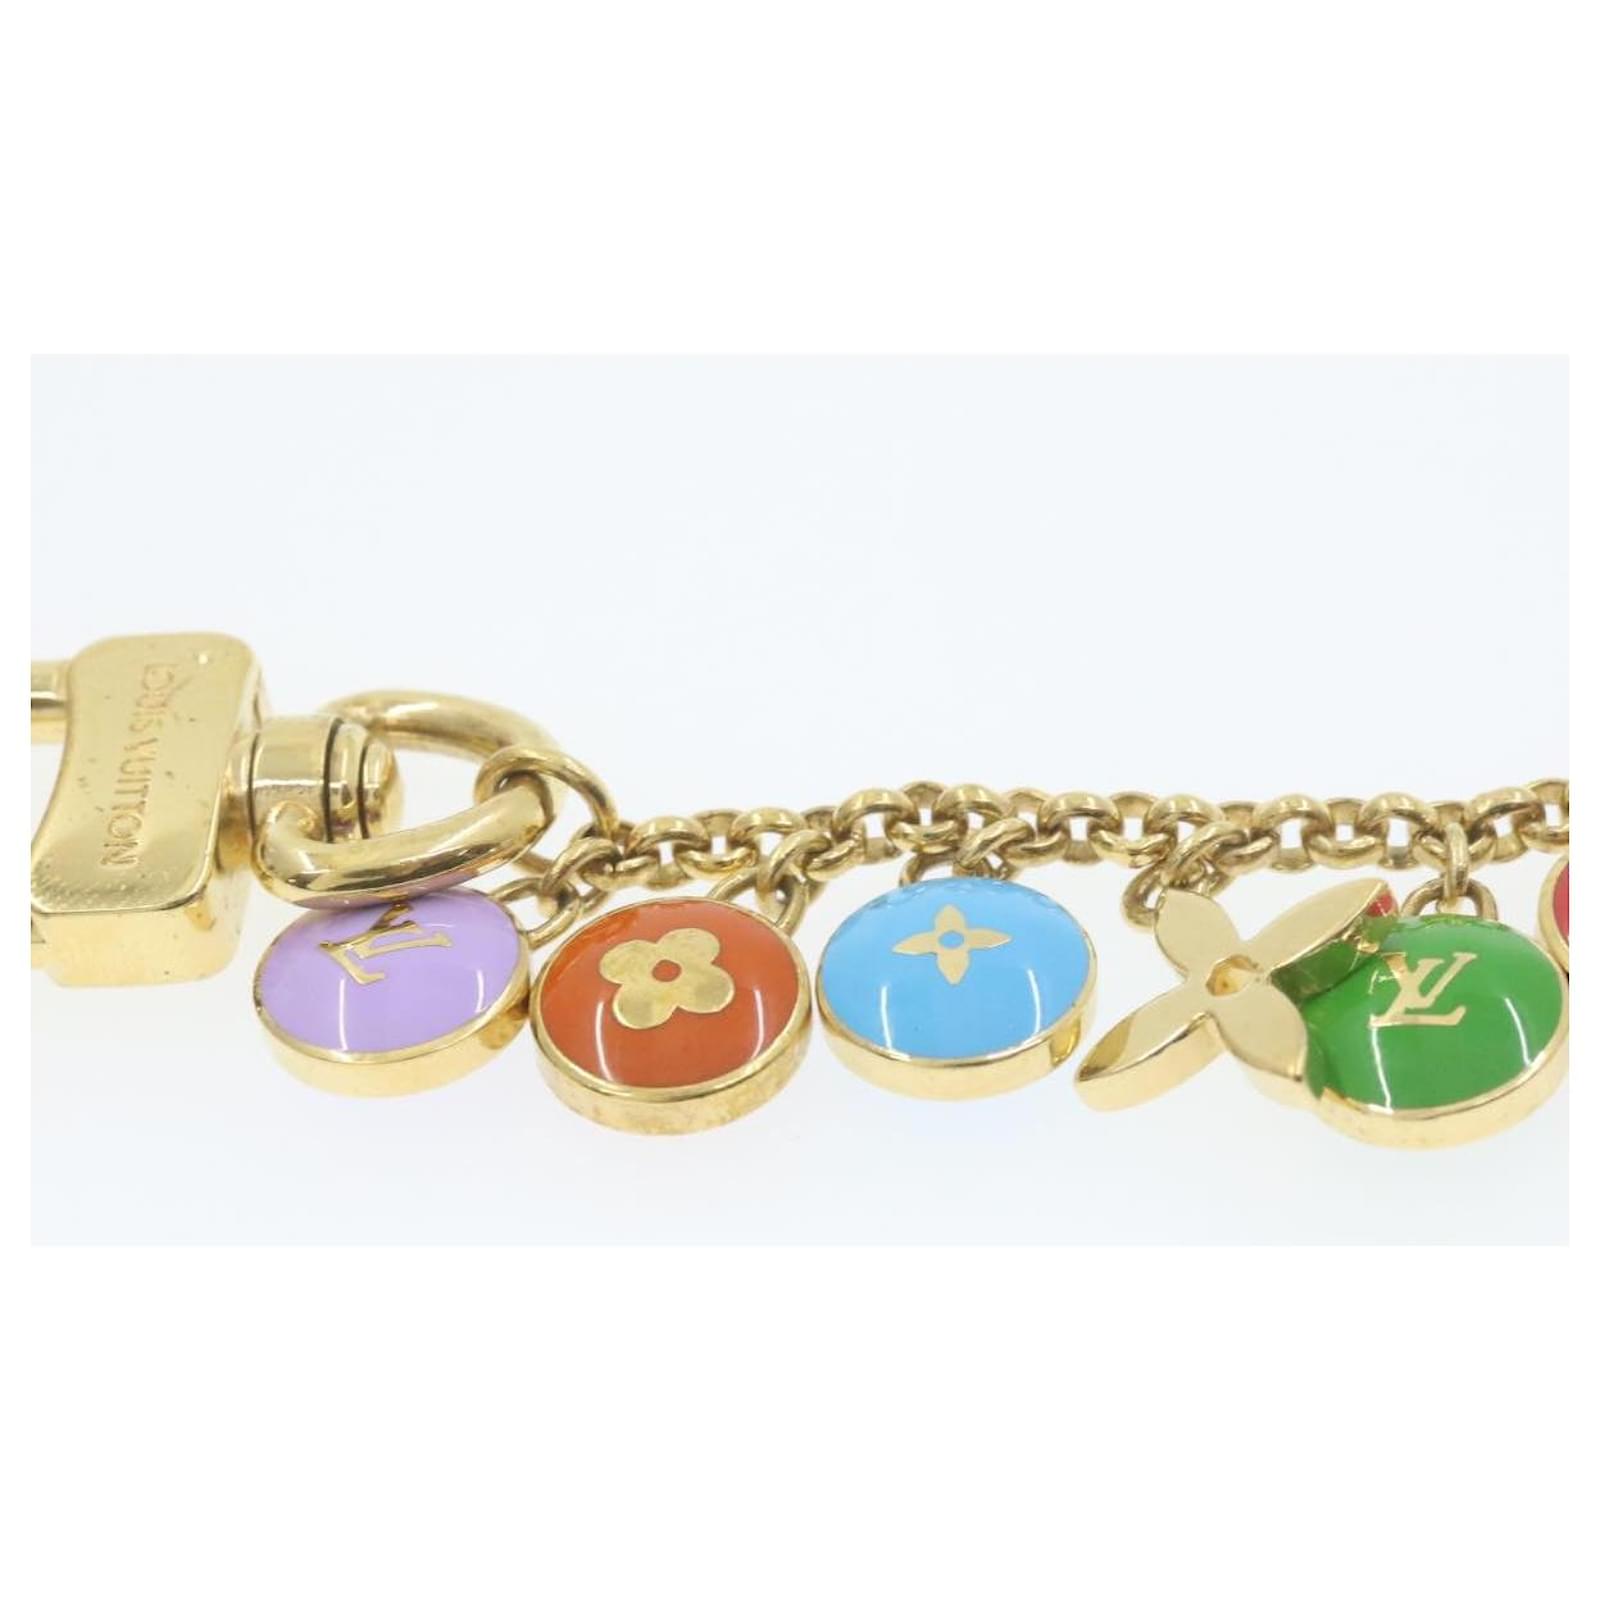 Louis Vuitton Authentic Metal porte cles chaine pastilles Key Chain Bag  Charm LV #LouisVuitton #KeyChainBagCharm